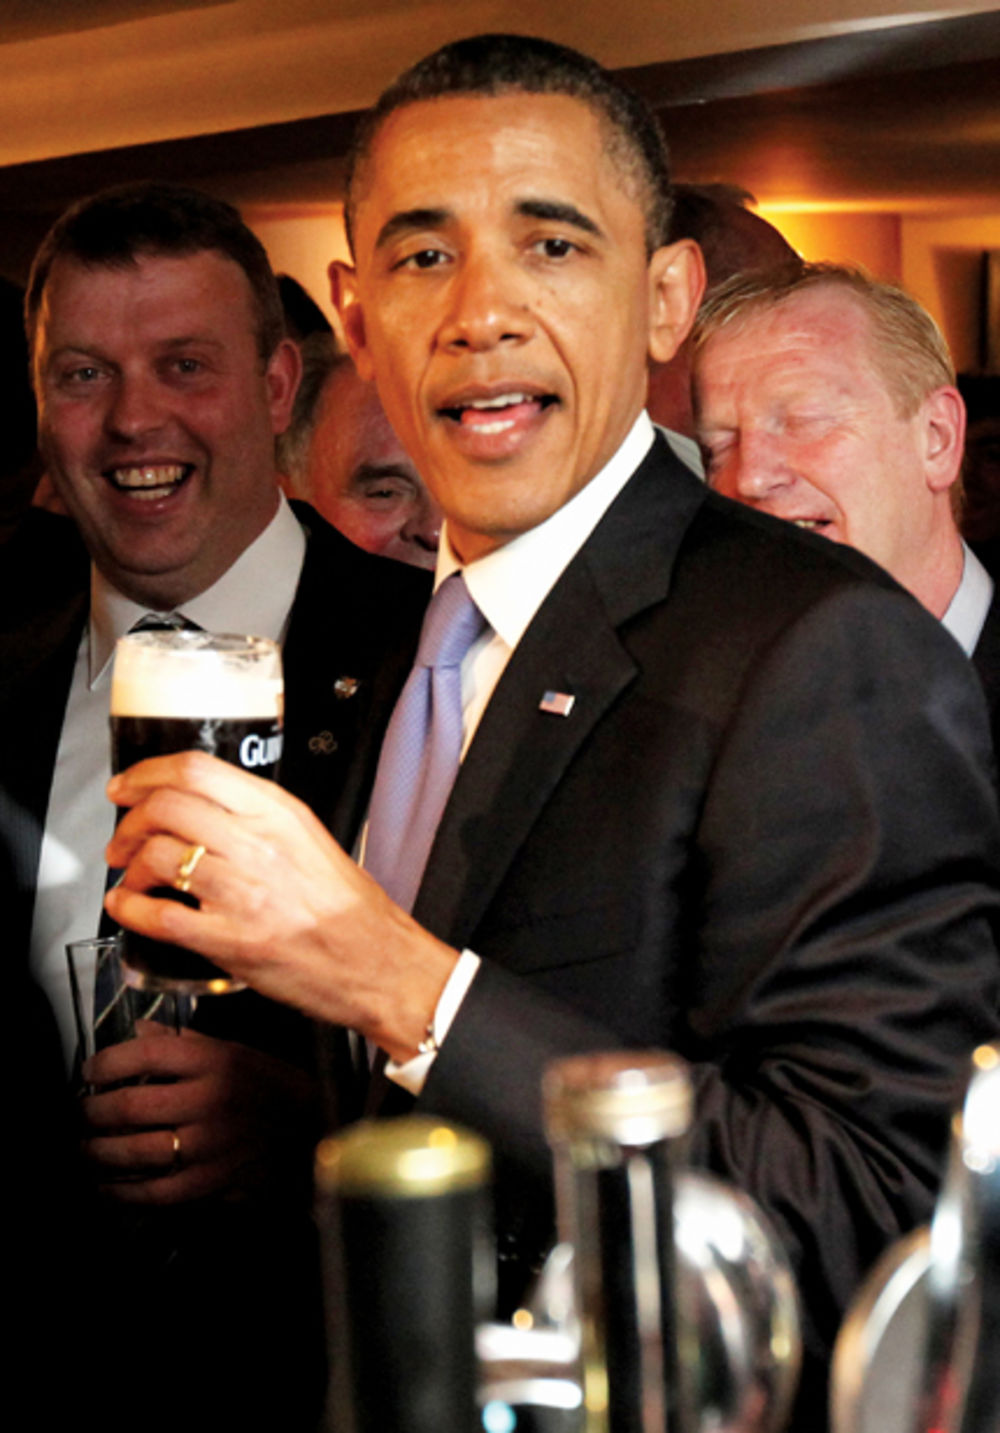 Uprkos tome što mu obaveze ne dozvoljavaju preterano opuštanje u javnosti, predsednik Amerike Barak Obama (50) nedavno je sebi dao oduška i u društvu svoje voljene supruge Mišel (47) posetio Irsku gde su uživali u nezaboravnom provodu.